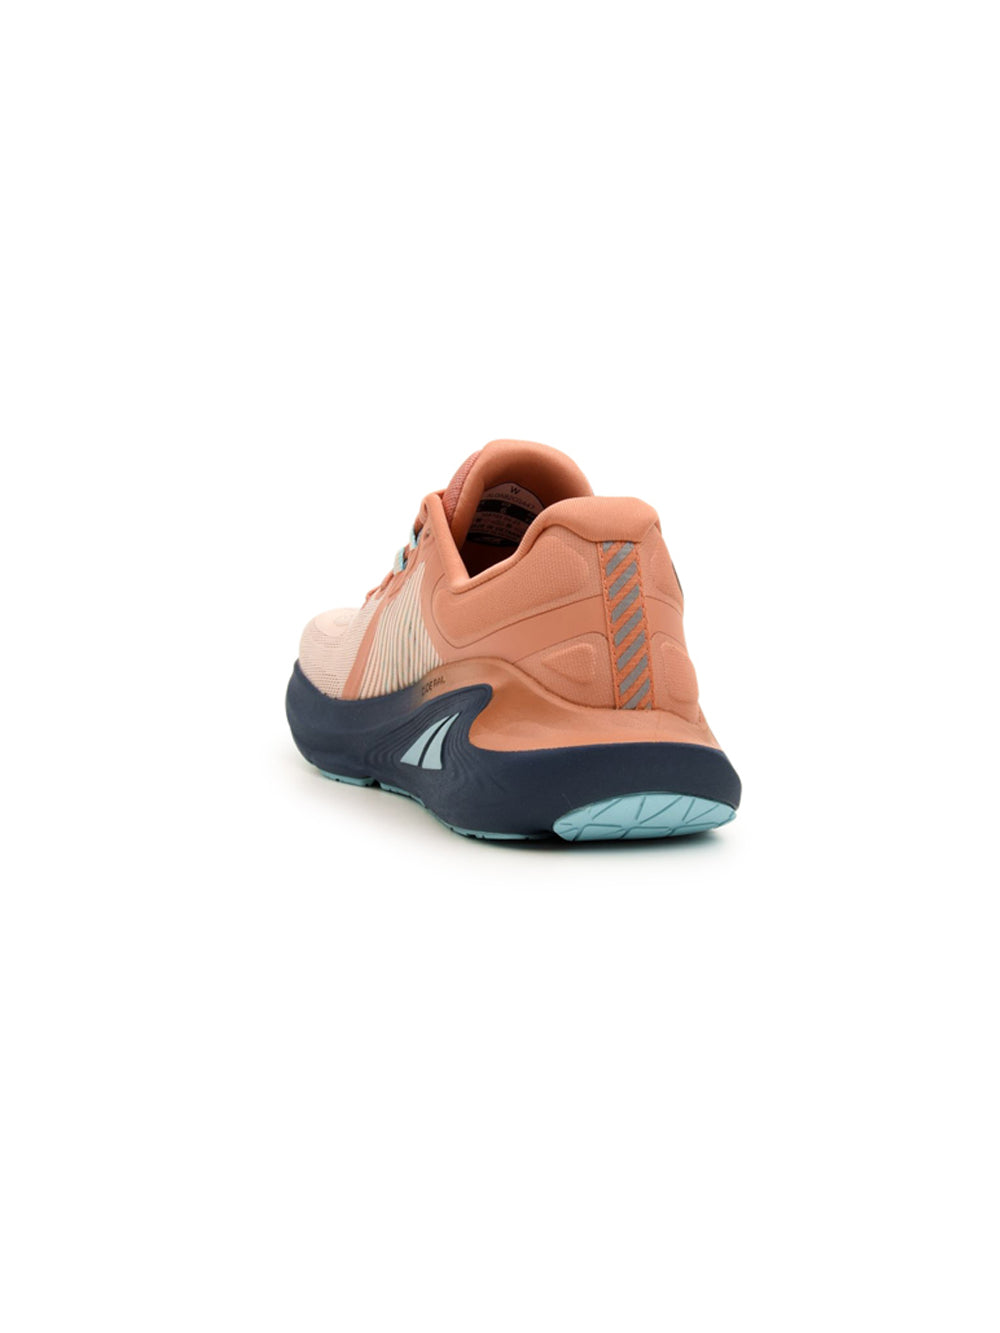 Sneakers Donna Corallo modello Paradigm 7 con suola ammortizzata